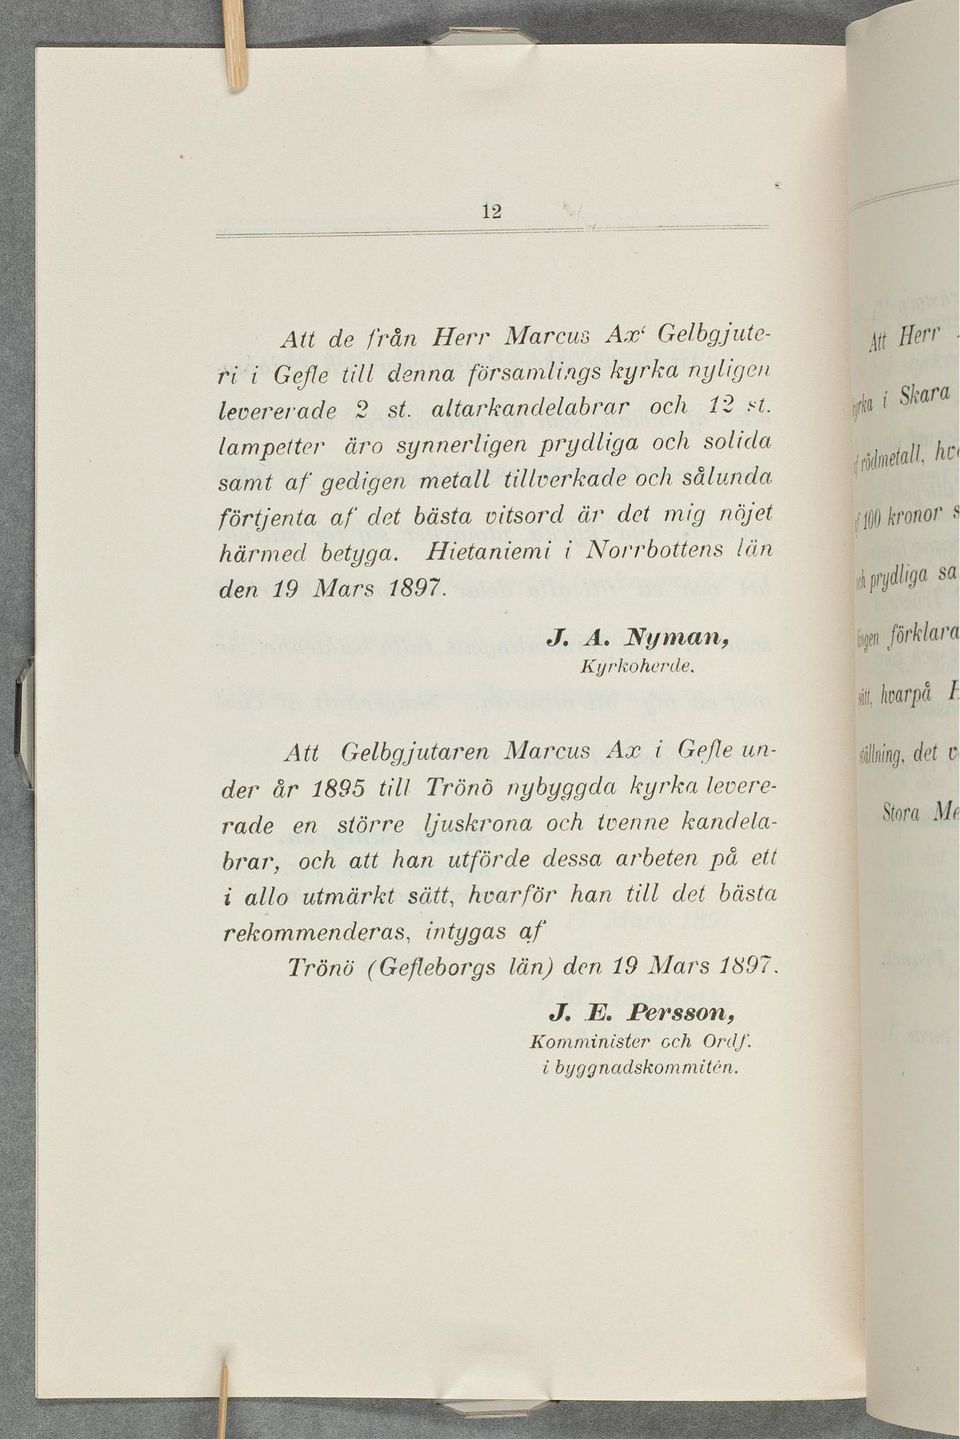 Hietaniemi z Norrbottens (din den 19 Mars 1897. J. A. Nyman, Kyrkoherde.